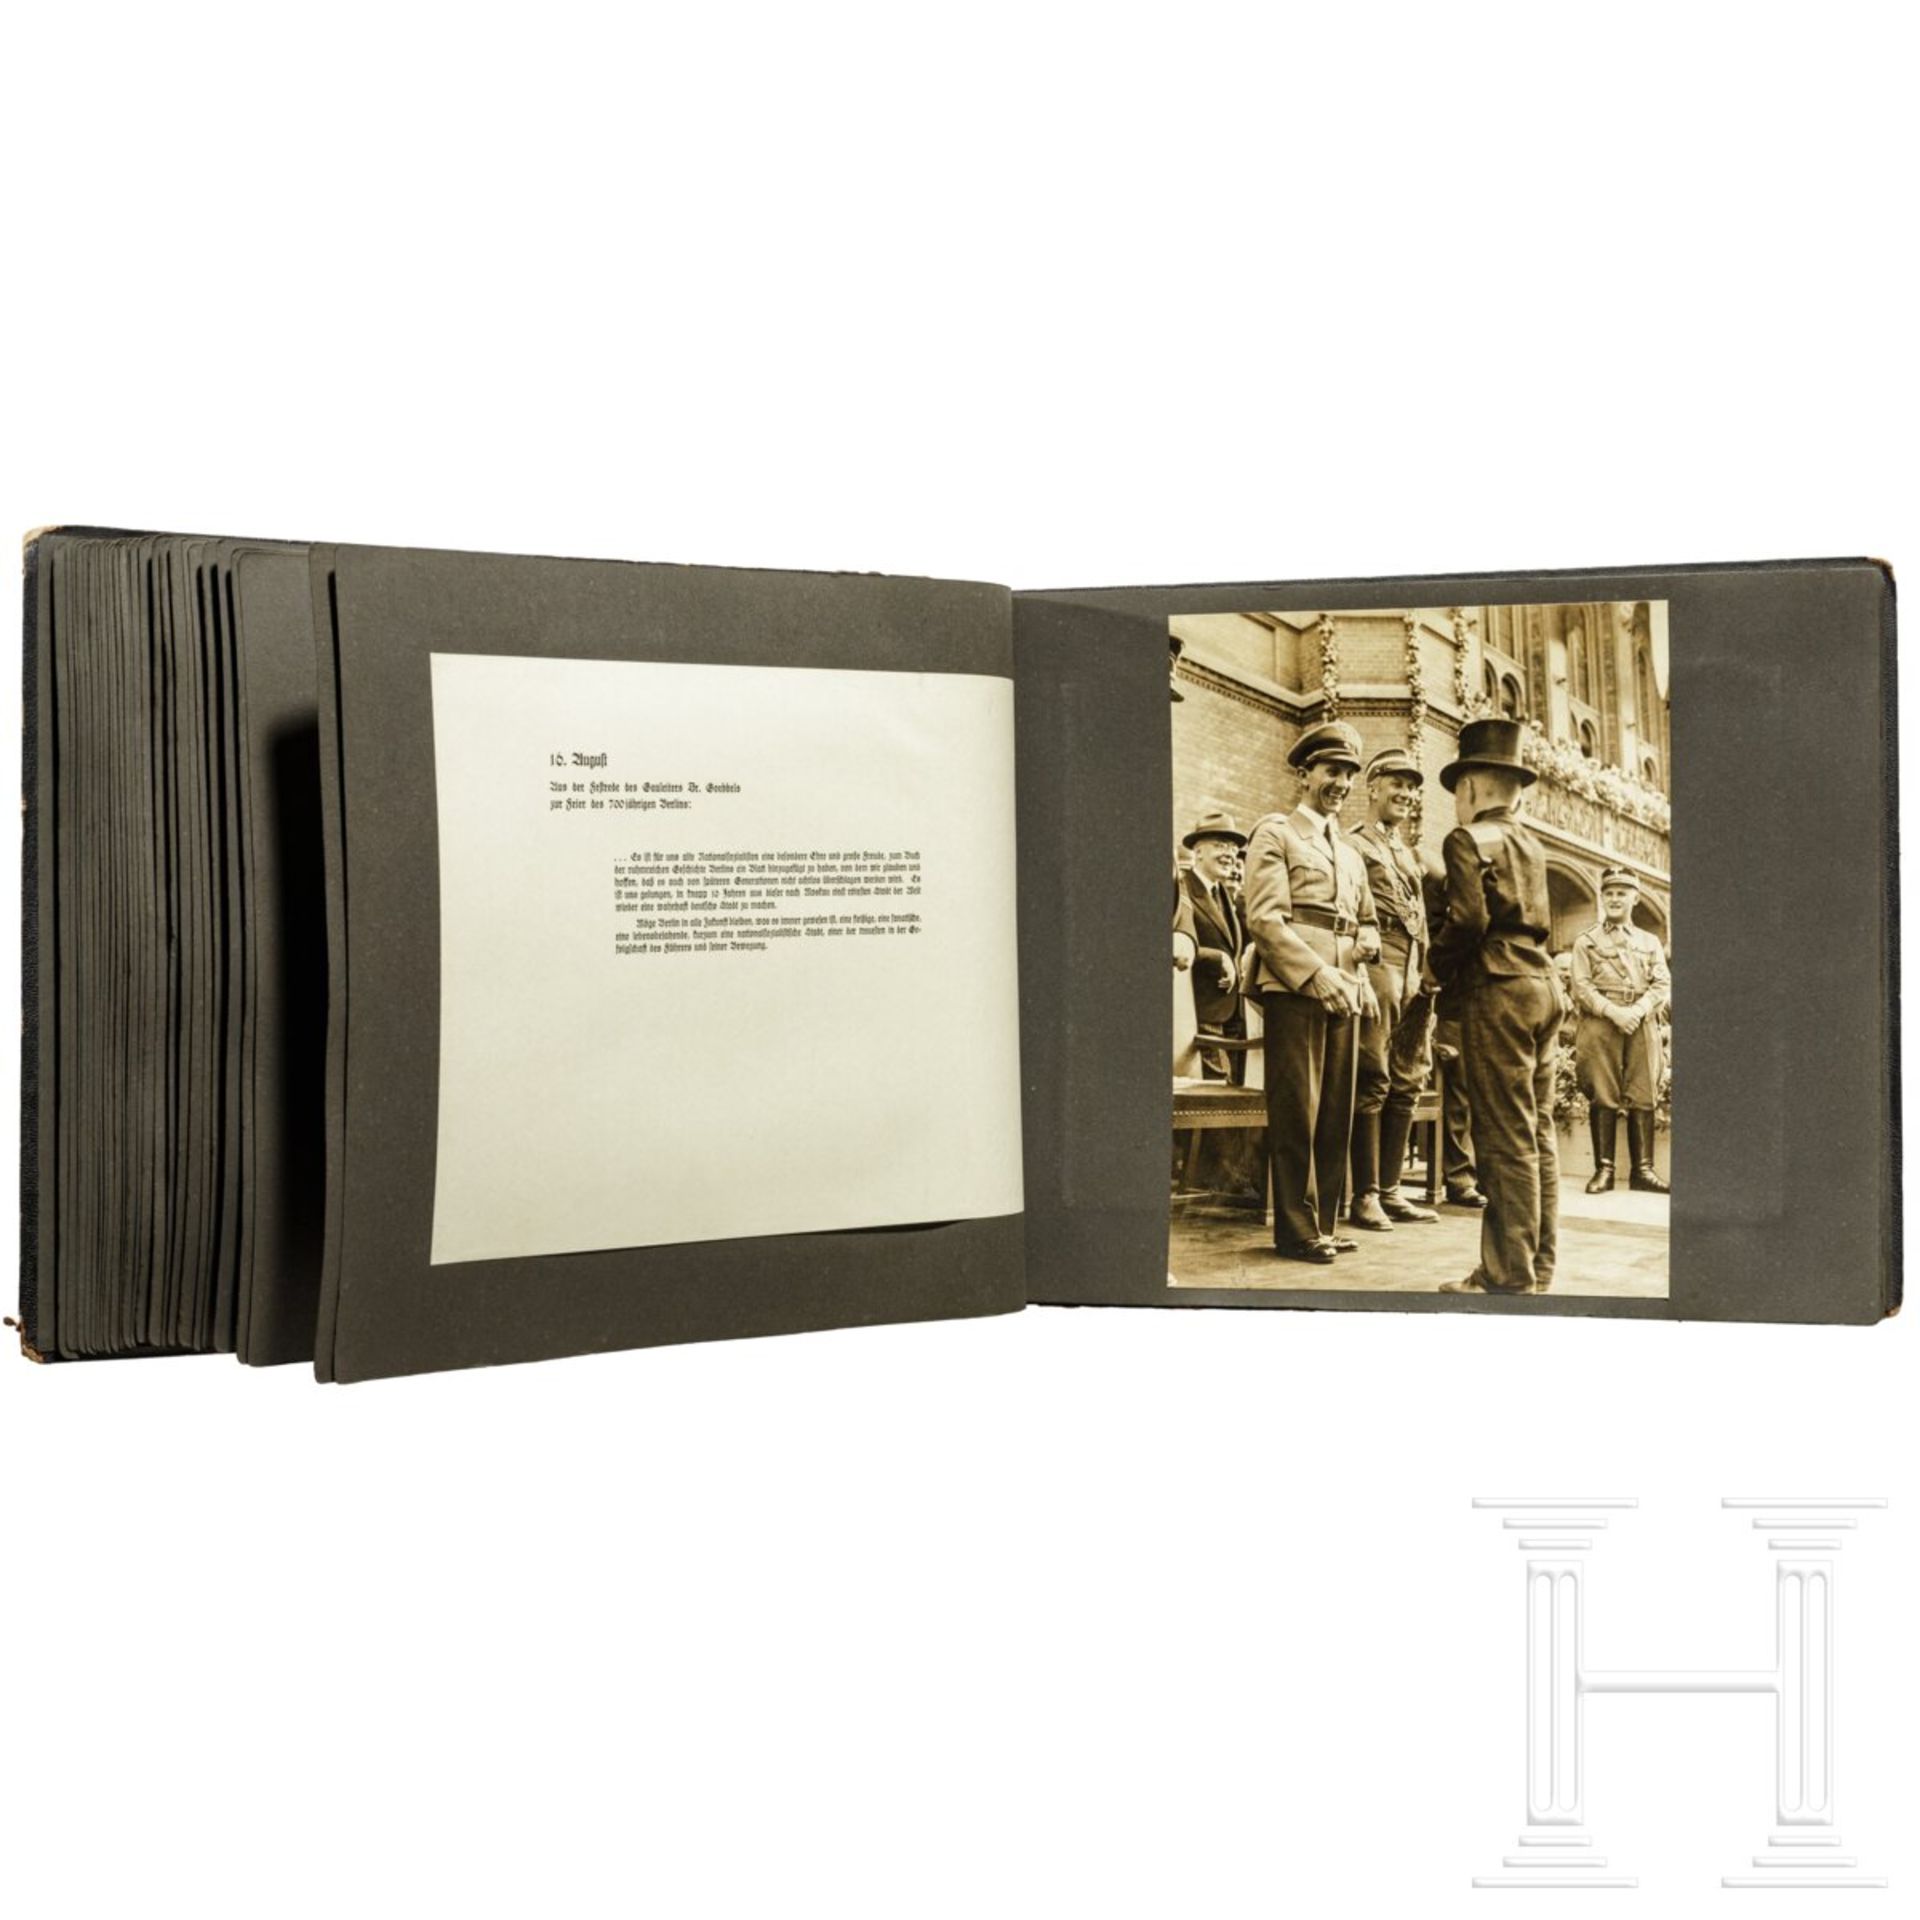 Geschenk-Fotoalbum der Partei 1937 mit 56 großformatigen Fotos und Textblättern - Image 3 of 17